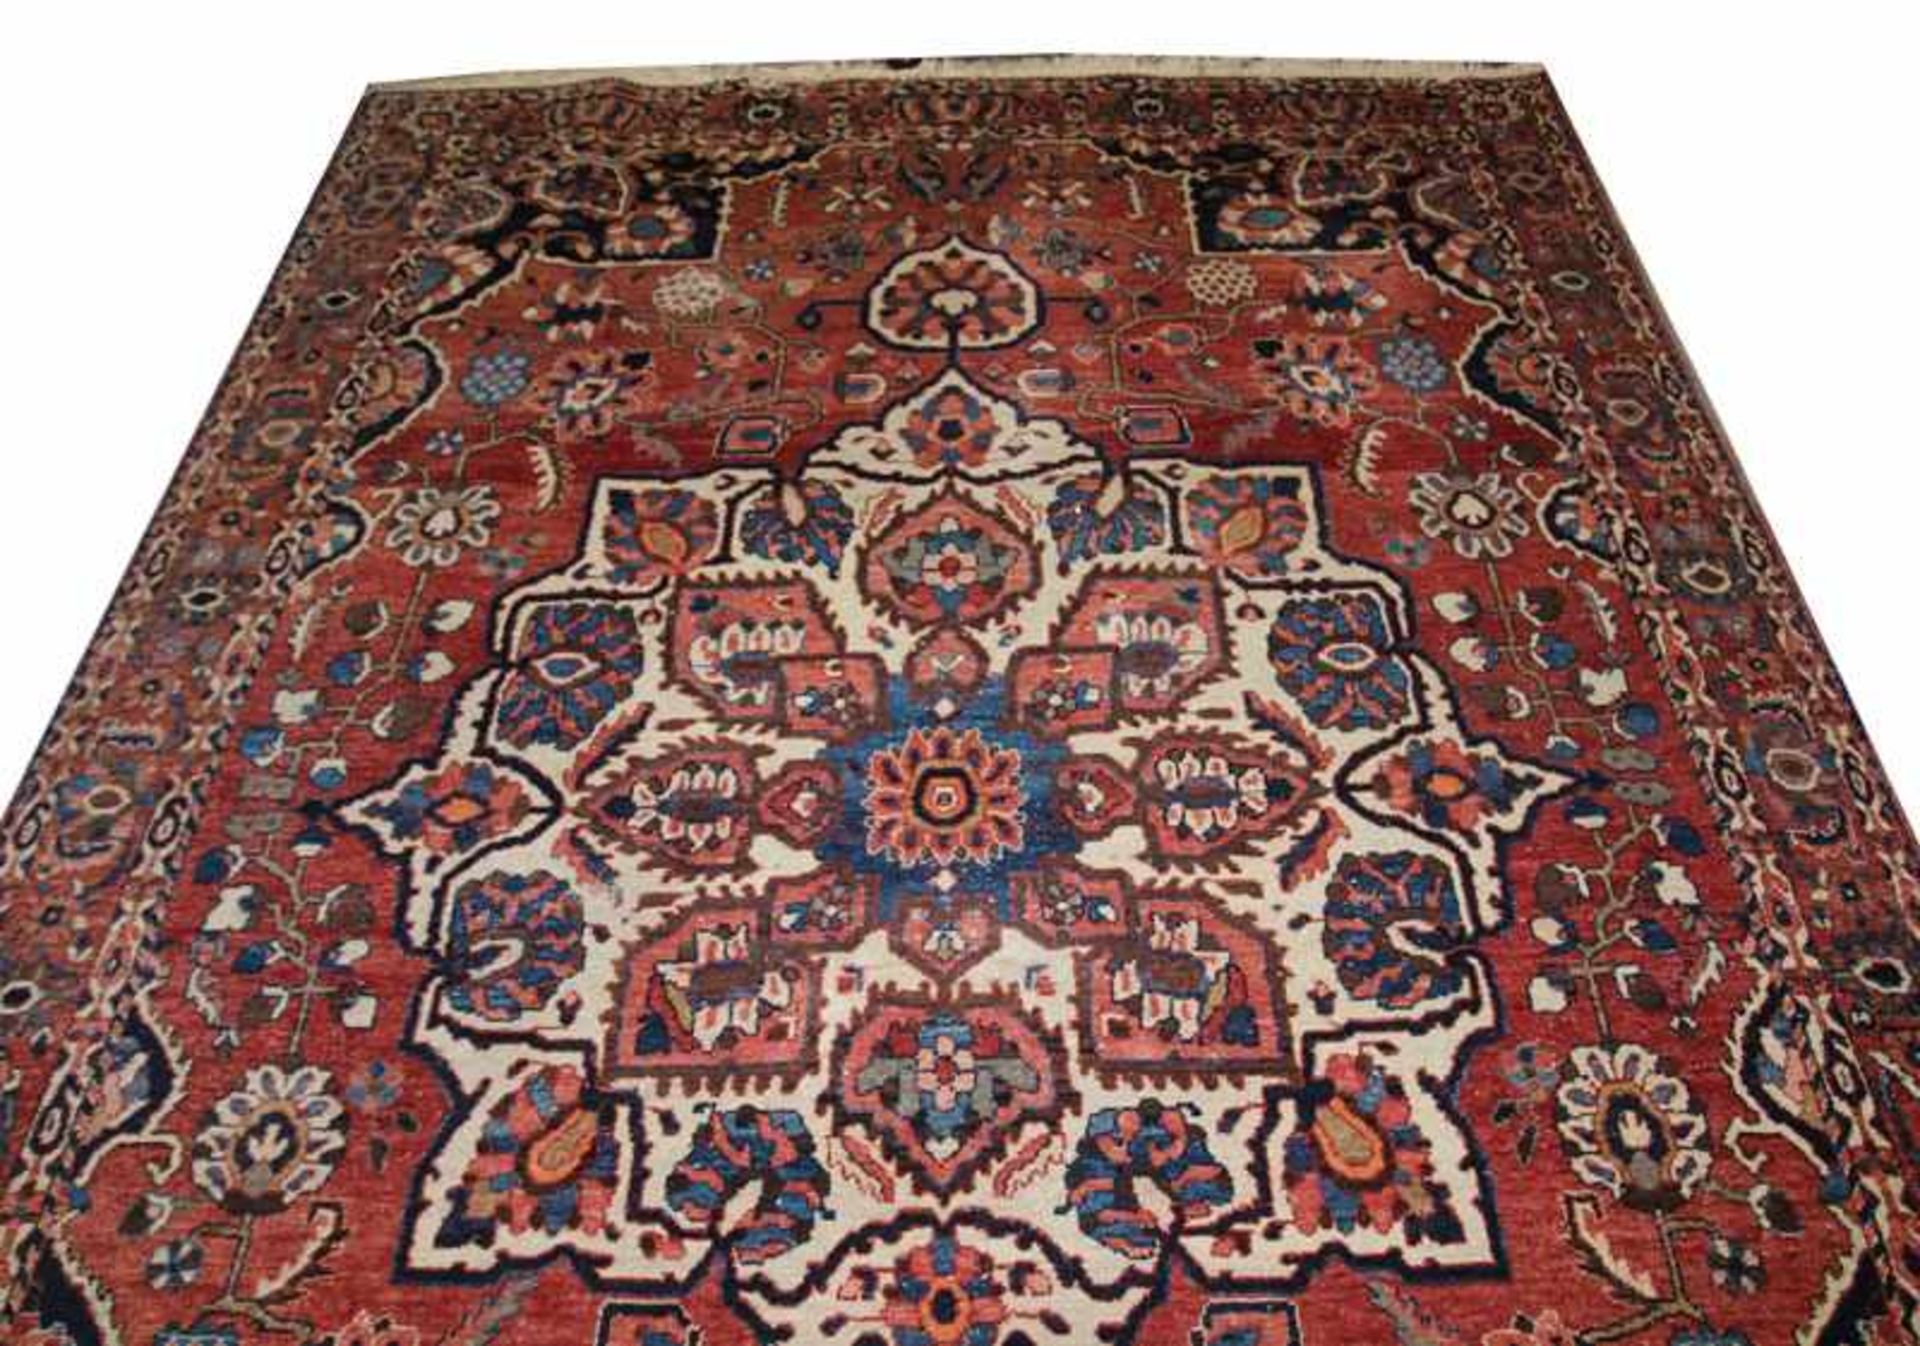 Teppich, Heriz, rot/blau /beige, teils verfärbt, Gebrauchsspuren, 286 cm x 210 cm